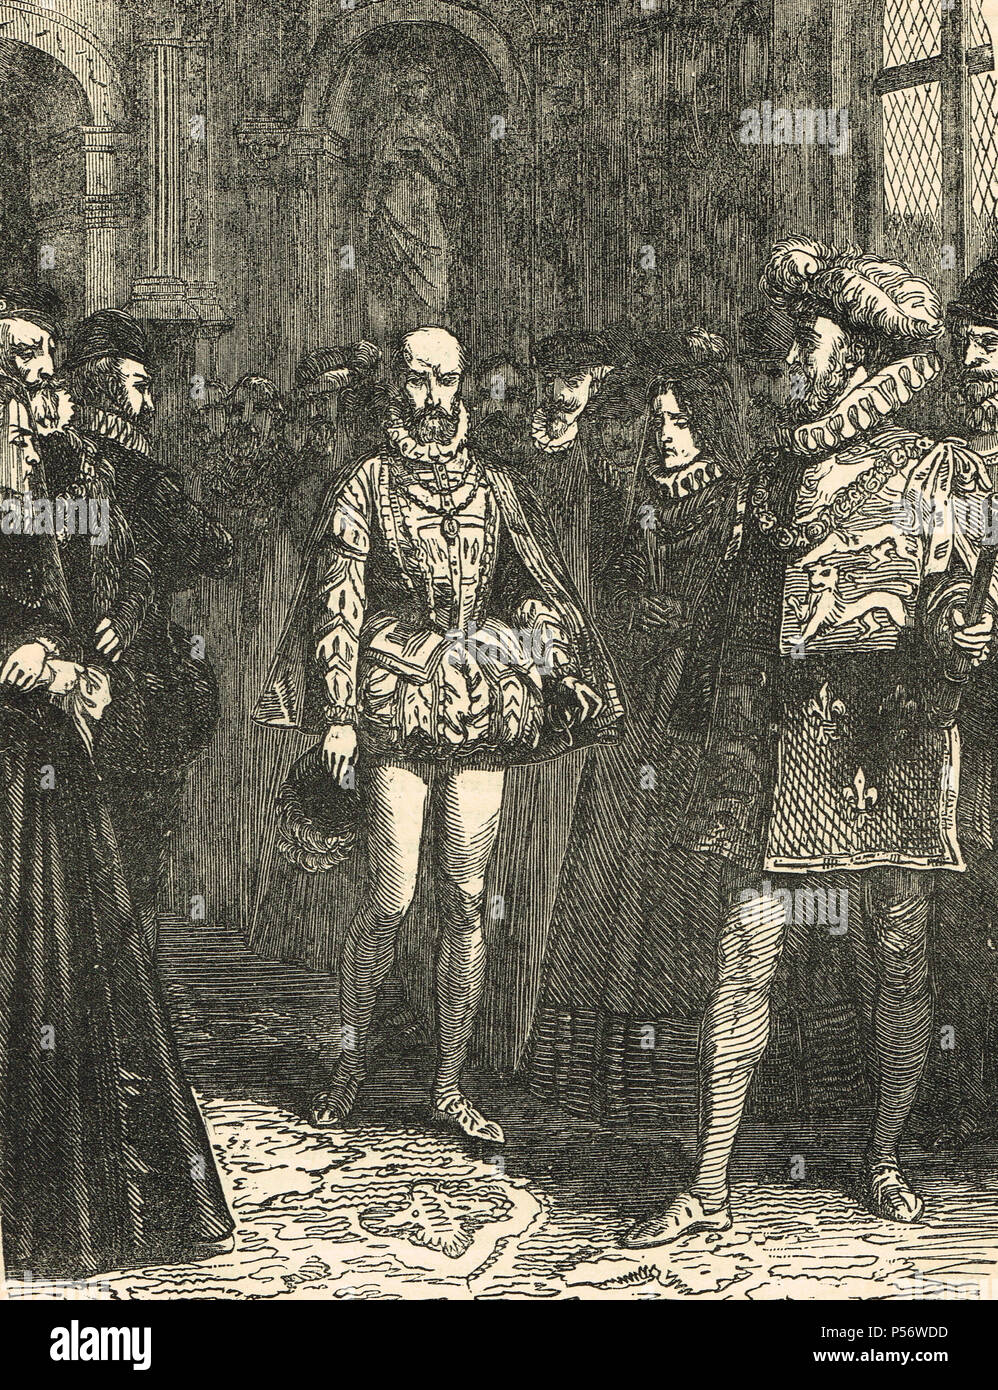 Der französische Botschafter, Michel de Castelnau, Sieur de la Mauvissiere, im Hof von Königin Elisabeth I. von England, gesendet von König Charles X, folgenden Tag Massaker des St. Bartholomäus, 1572, zu zerstreuen, die Aufregung erstellt Stockfoto